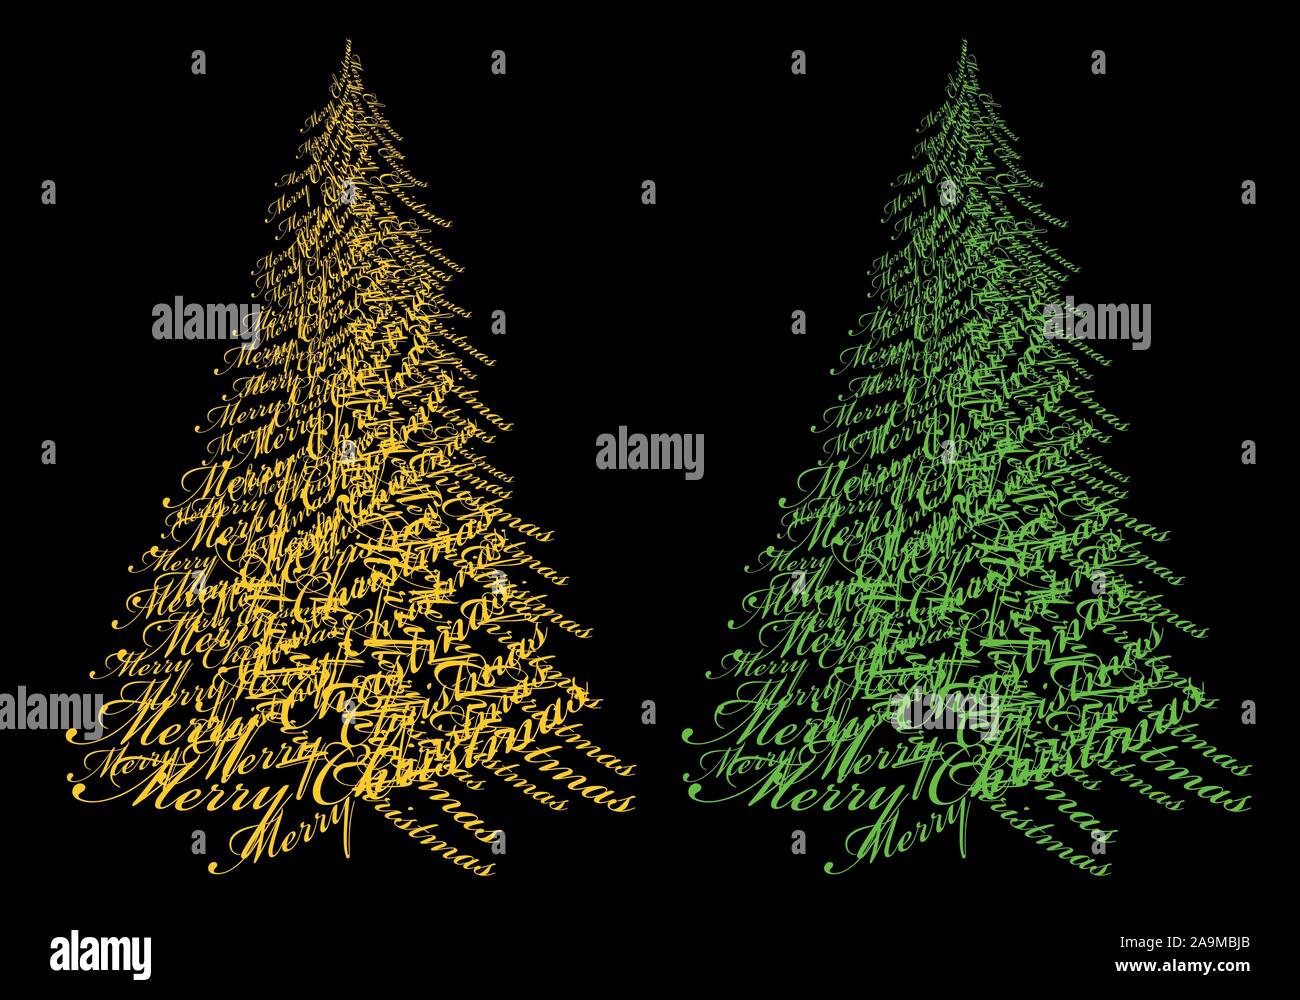 Abstrakte Weihnachtsbaum mit Gold text Frohe Weihnachten, Vektor, Abbildung Stock Vektor